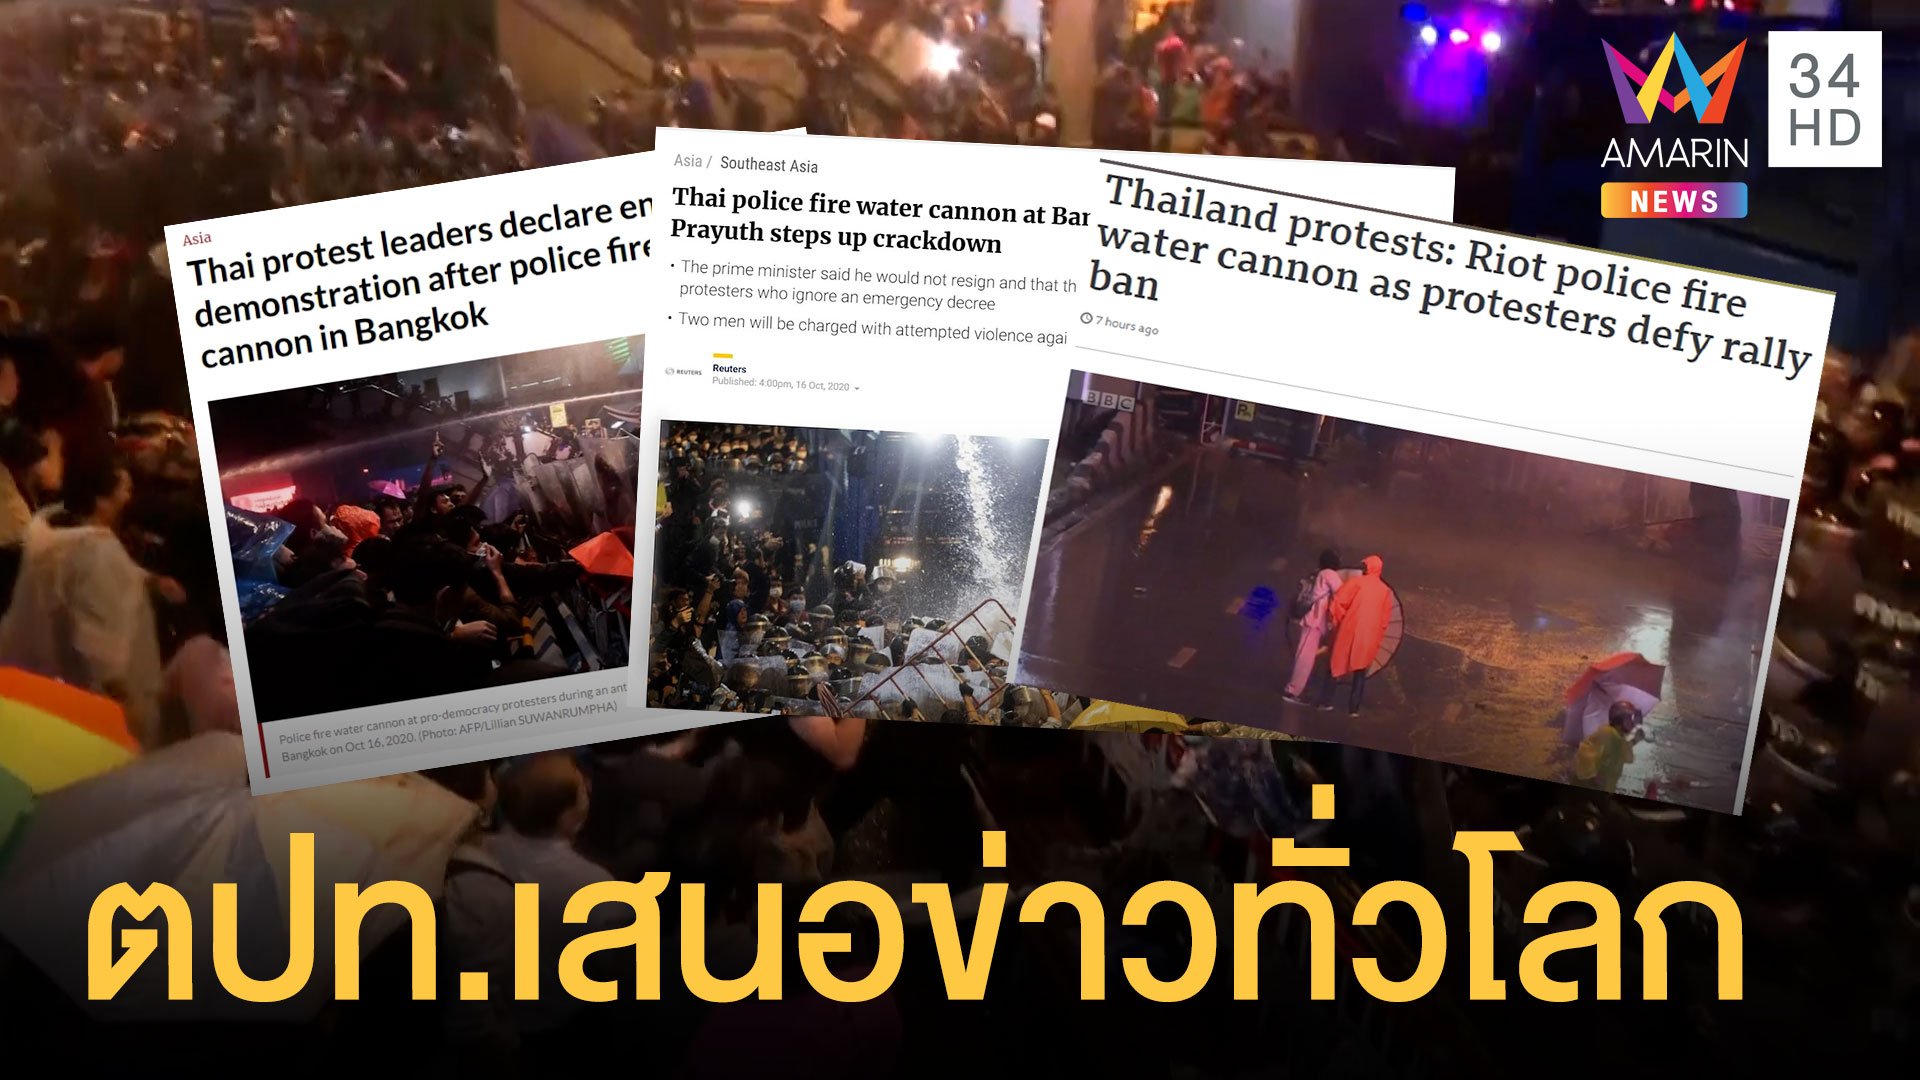 สื่อต่างชาติเกาะติดการชุมนุมไทย เสนอข่าวไปทั่วโลก | ข่าวอรุณอมรินทร์ | 17 ต.ค. 63 | AMARIN TVHD34